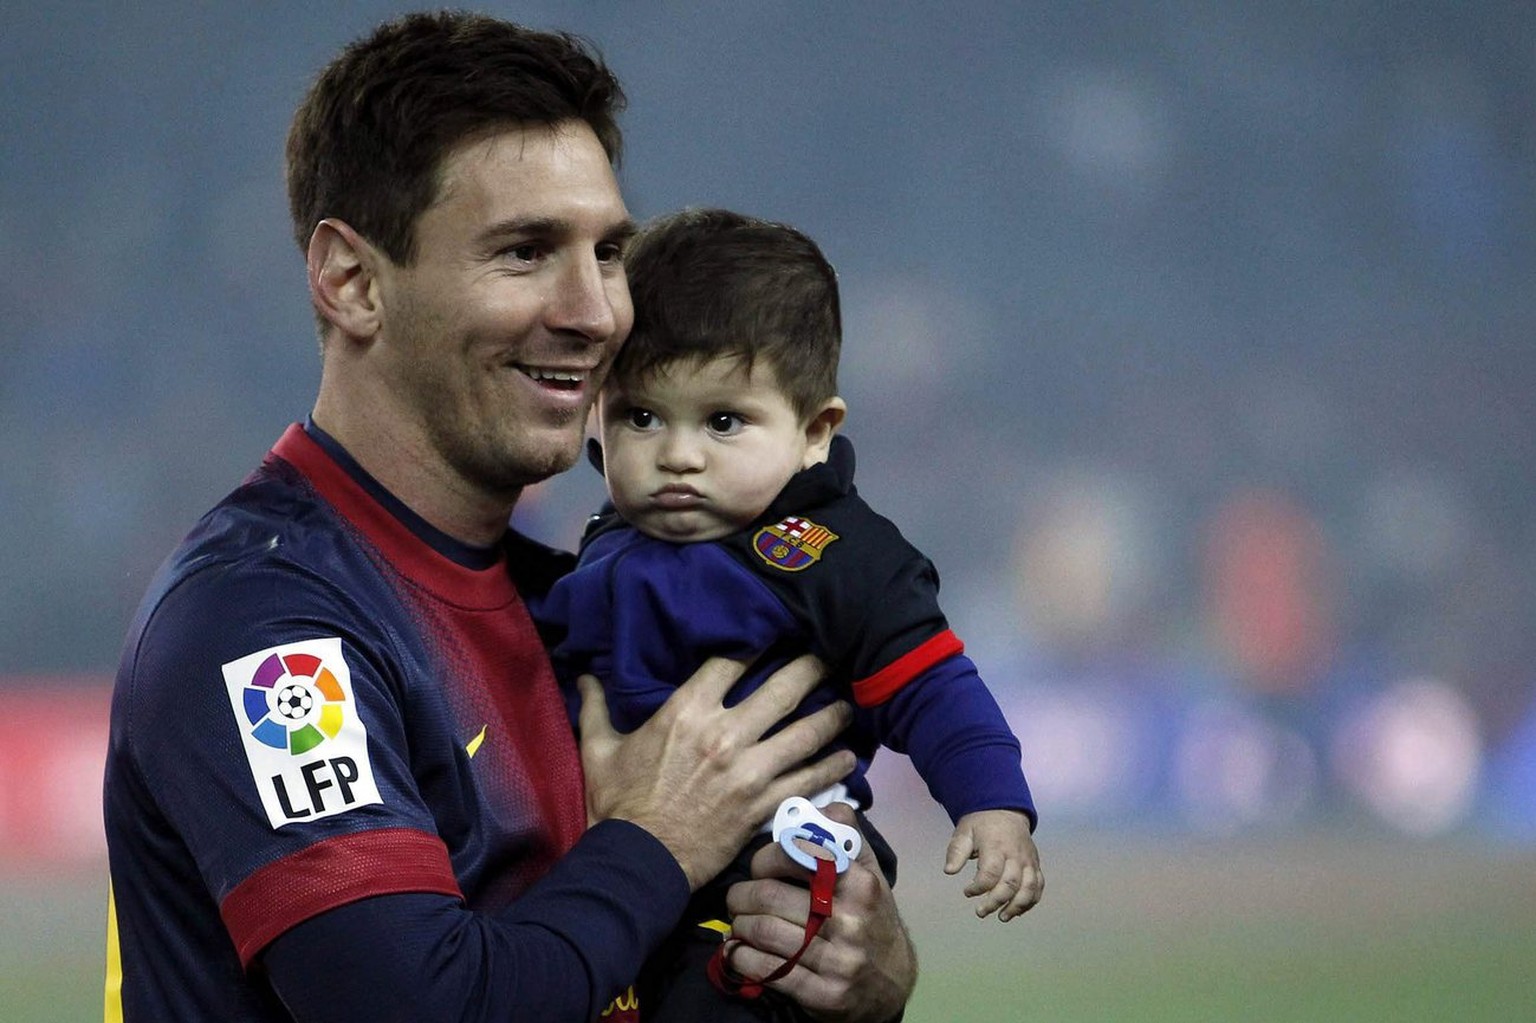 Lionel Messi mit Sohn Thiago. Ob Messi sich beim Namen von den Ex-Teamkollegen Thiago Motta und Thiago Alcantara inspirieren liess?